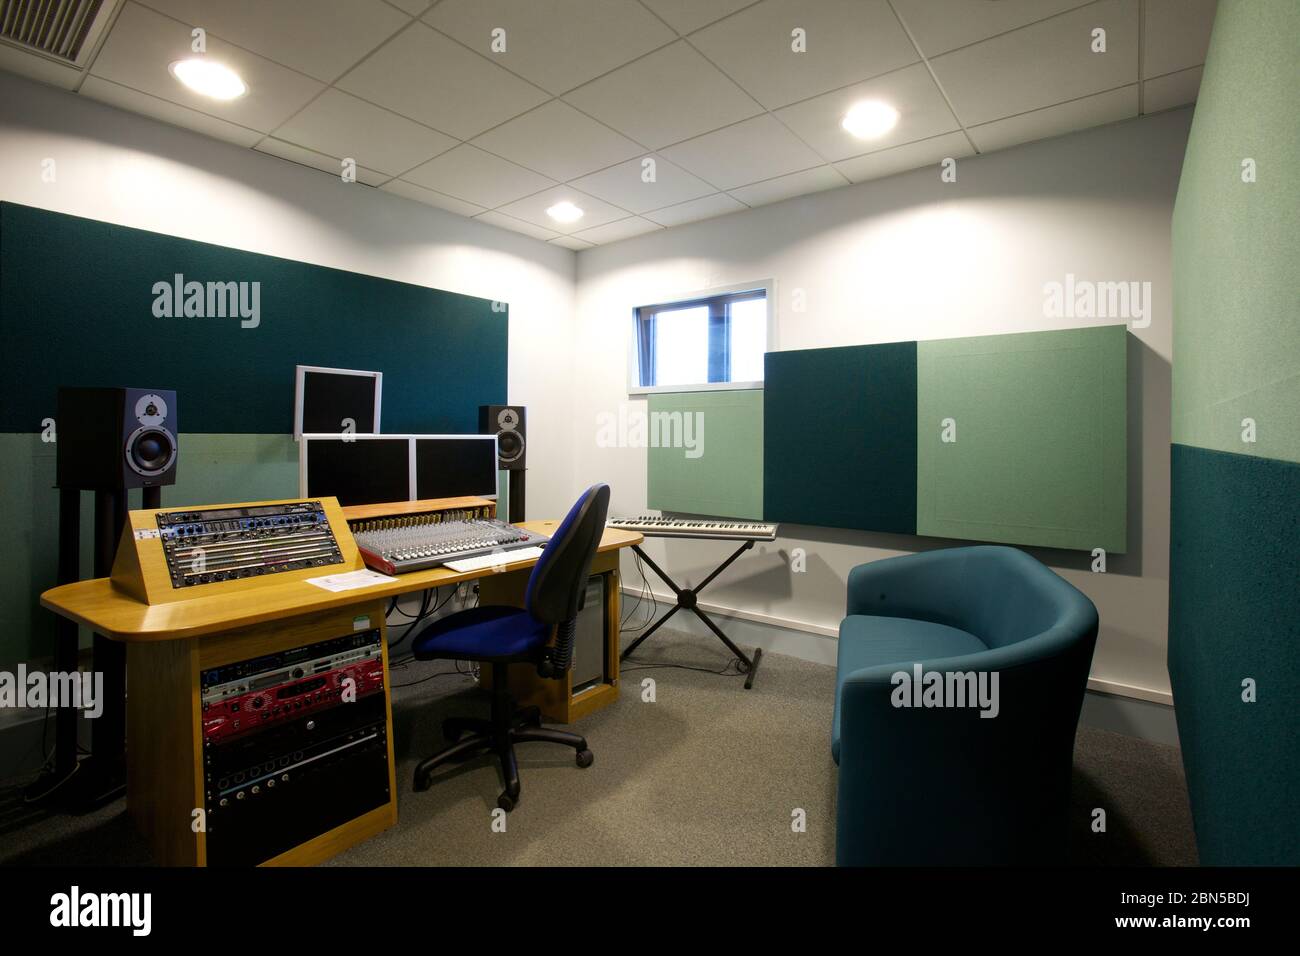 Tonstudio mit Lautsprechern, Monitoren, einer Tontafel und Schalldämpfern an den Wänden, Stockfoto